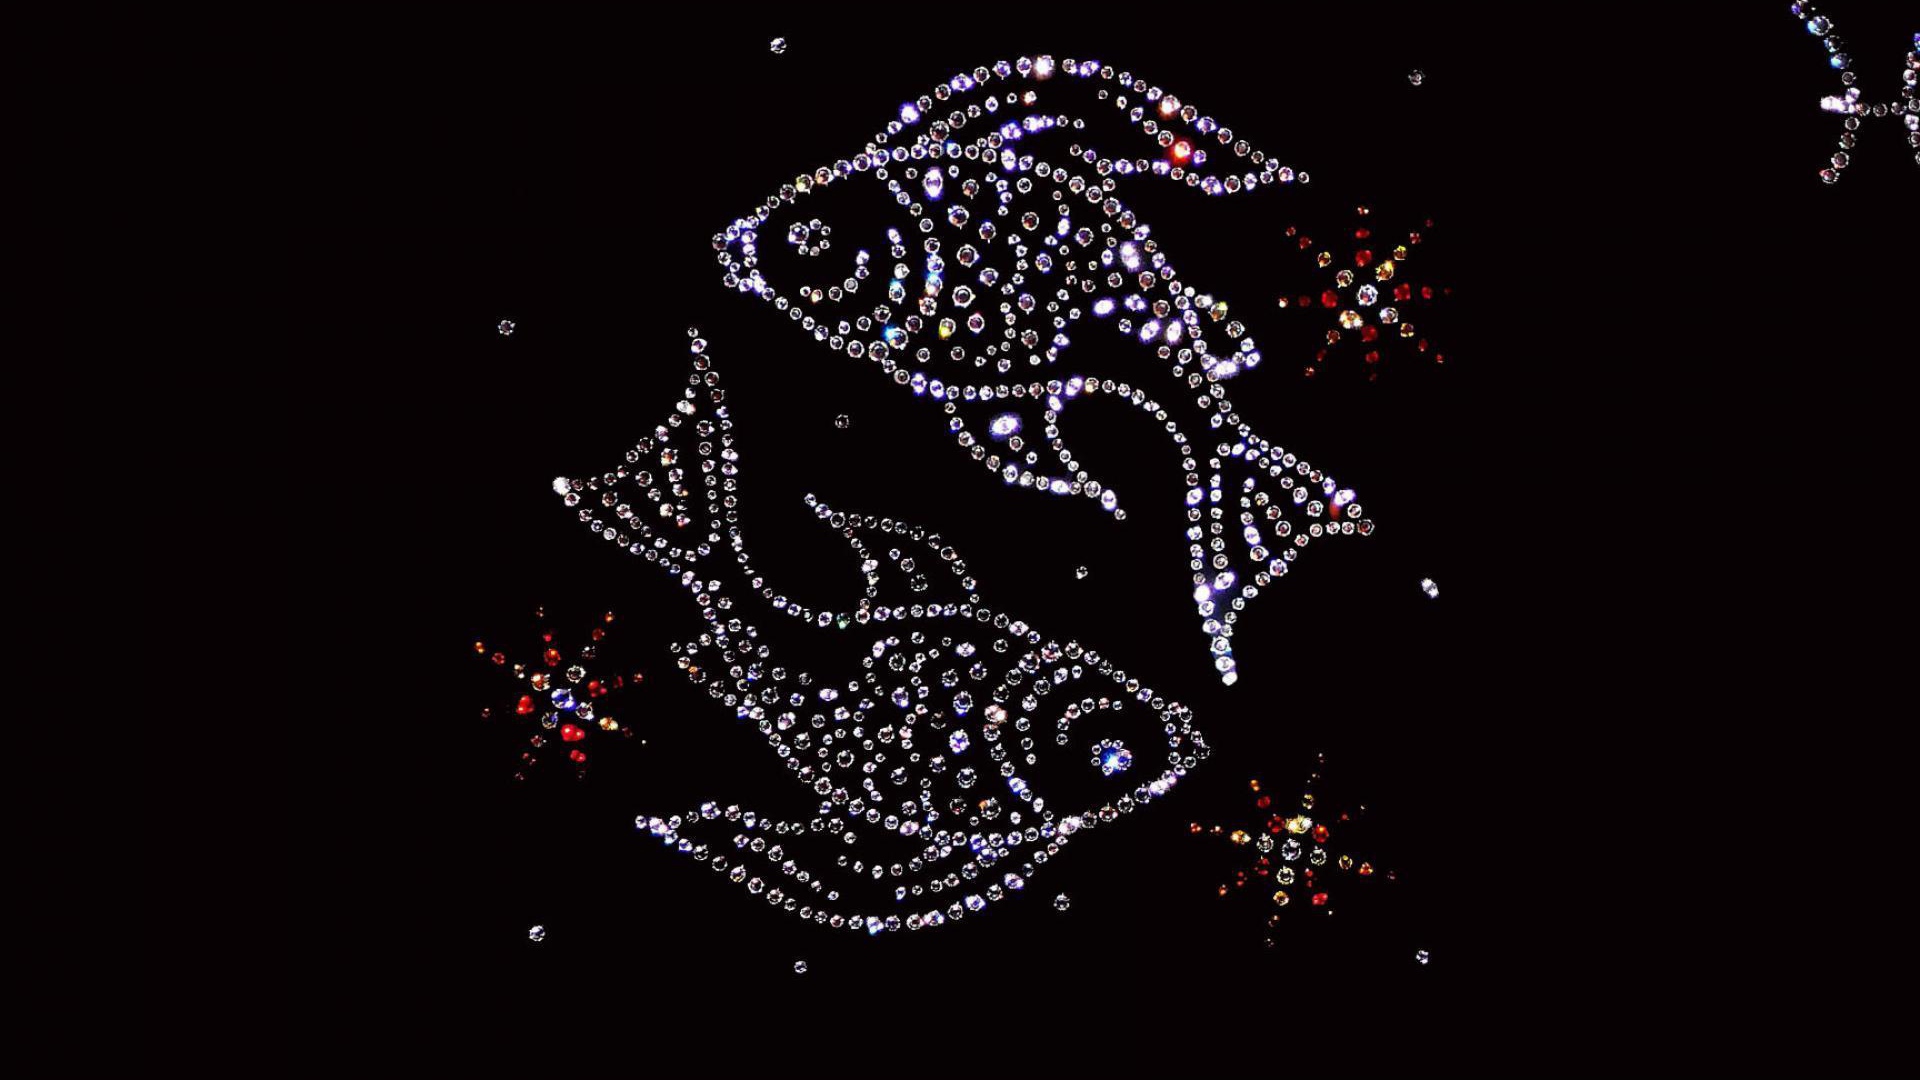 Shiny fish zodiac sign on a black background.